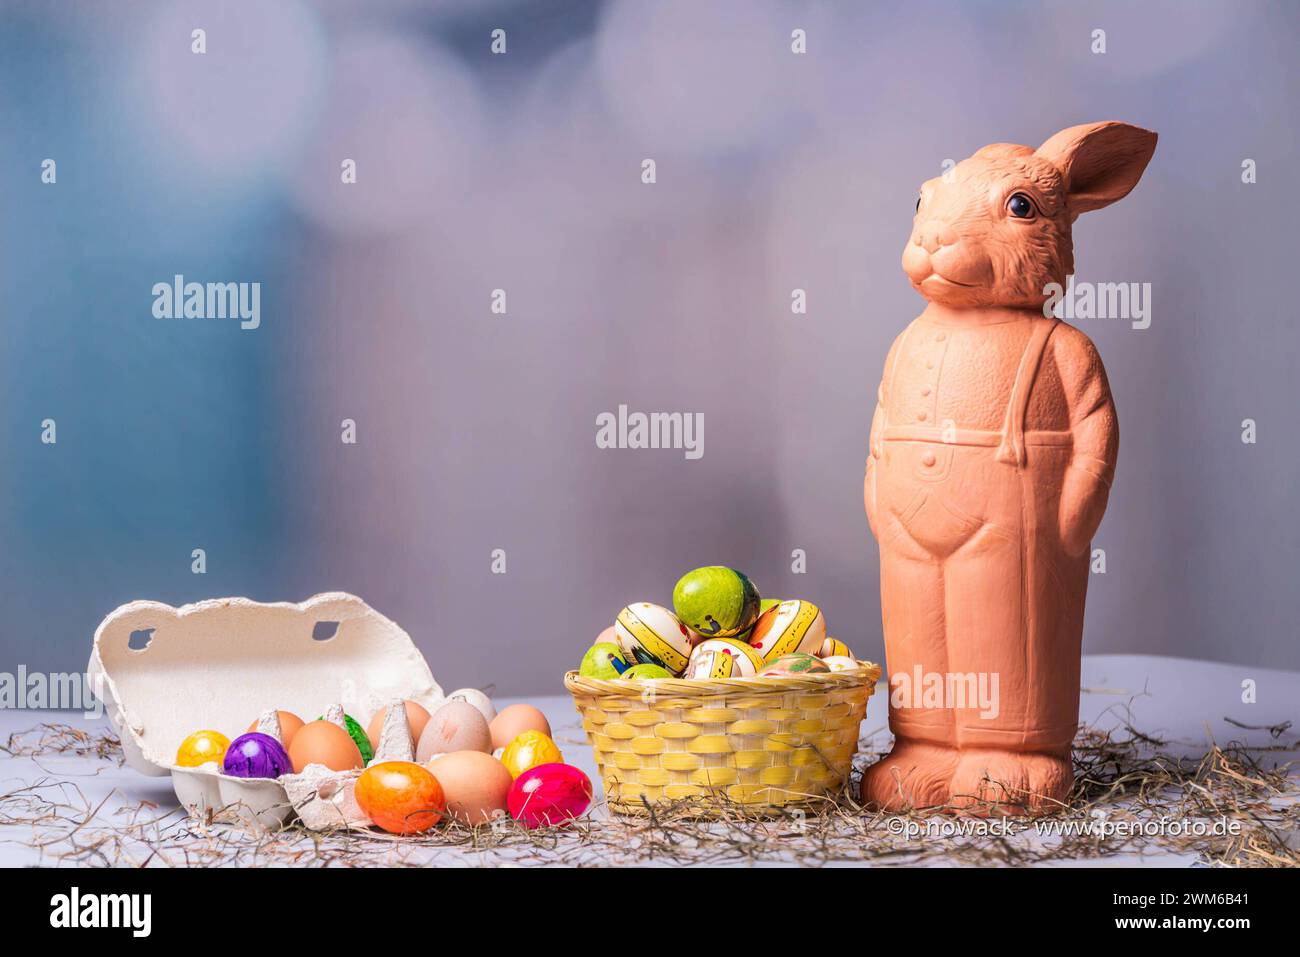 Eine Osterhasenfigur aus Ton vor einem Korb mit Ostereiern und buntem Hintergrund *** A clay Easter bunny figurine in front of a basket with Easter eggs and a colorful background Stock Photo